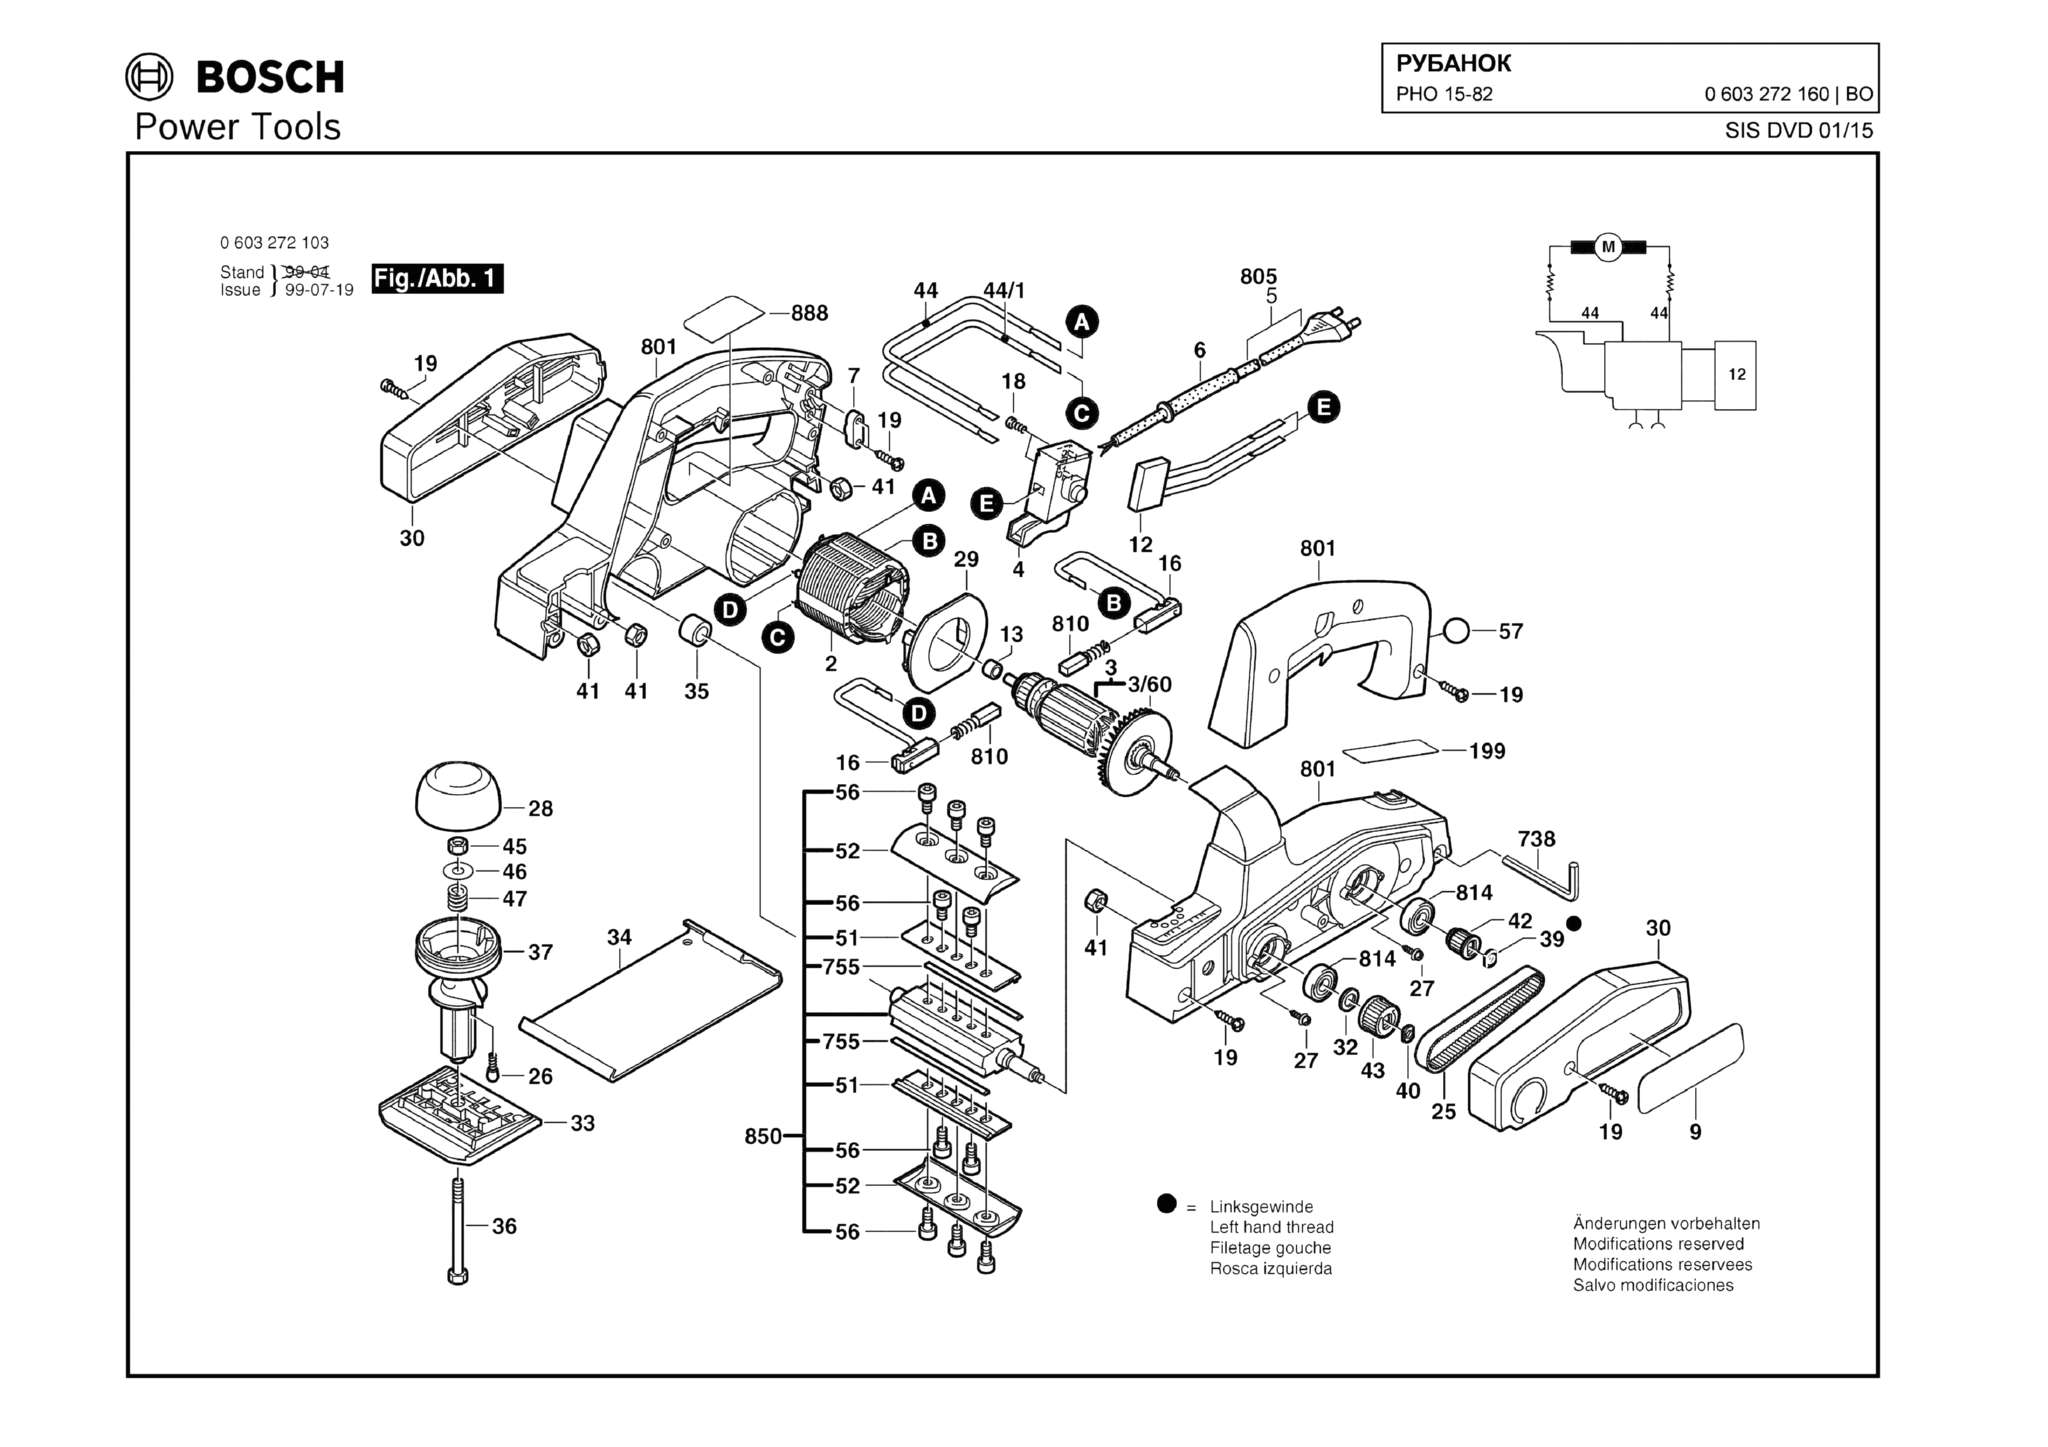 Запчасти, схема и деталировка Bosch PHO 15-82 (ТИП 0603272160)